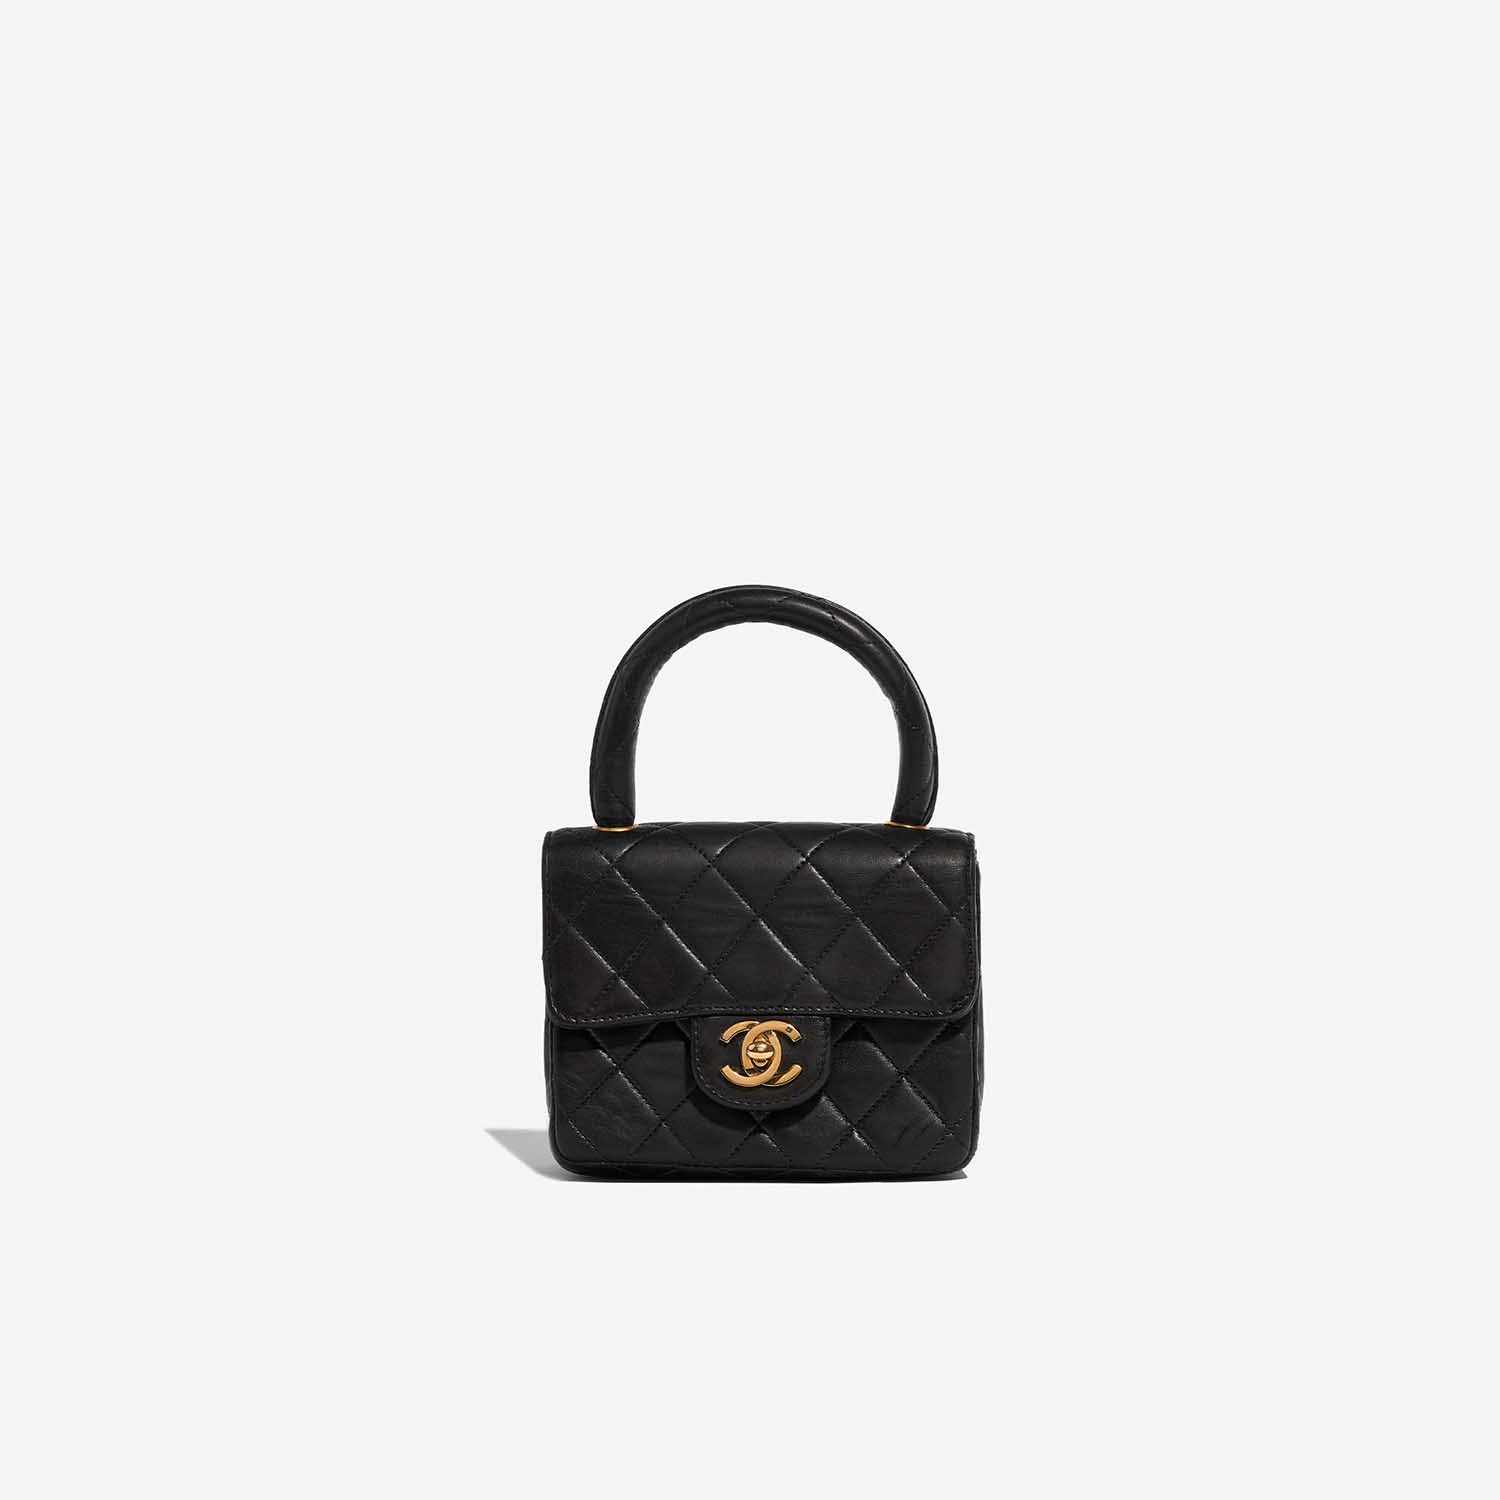 Sac Chanel d'occasion Timeless Poignée Petit Agneau Noir Noir Front | Vendez votre sac de créateur sur Saclab.com